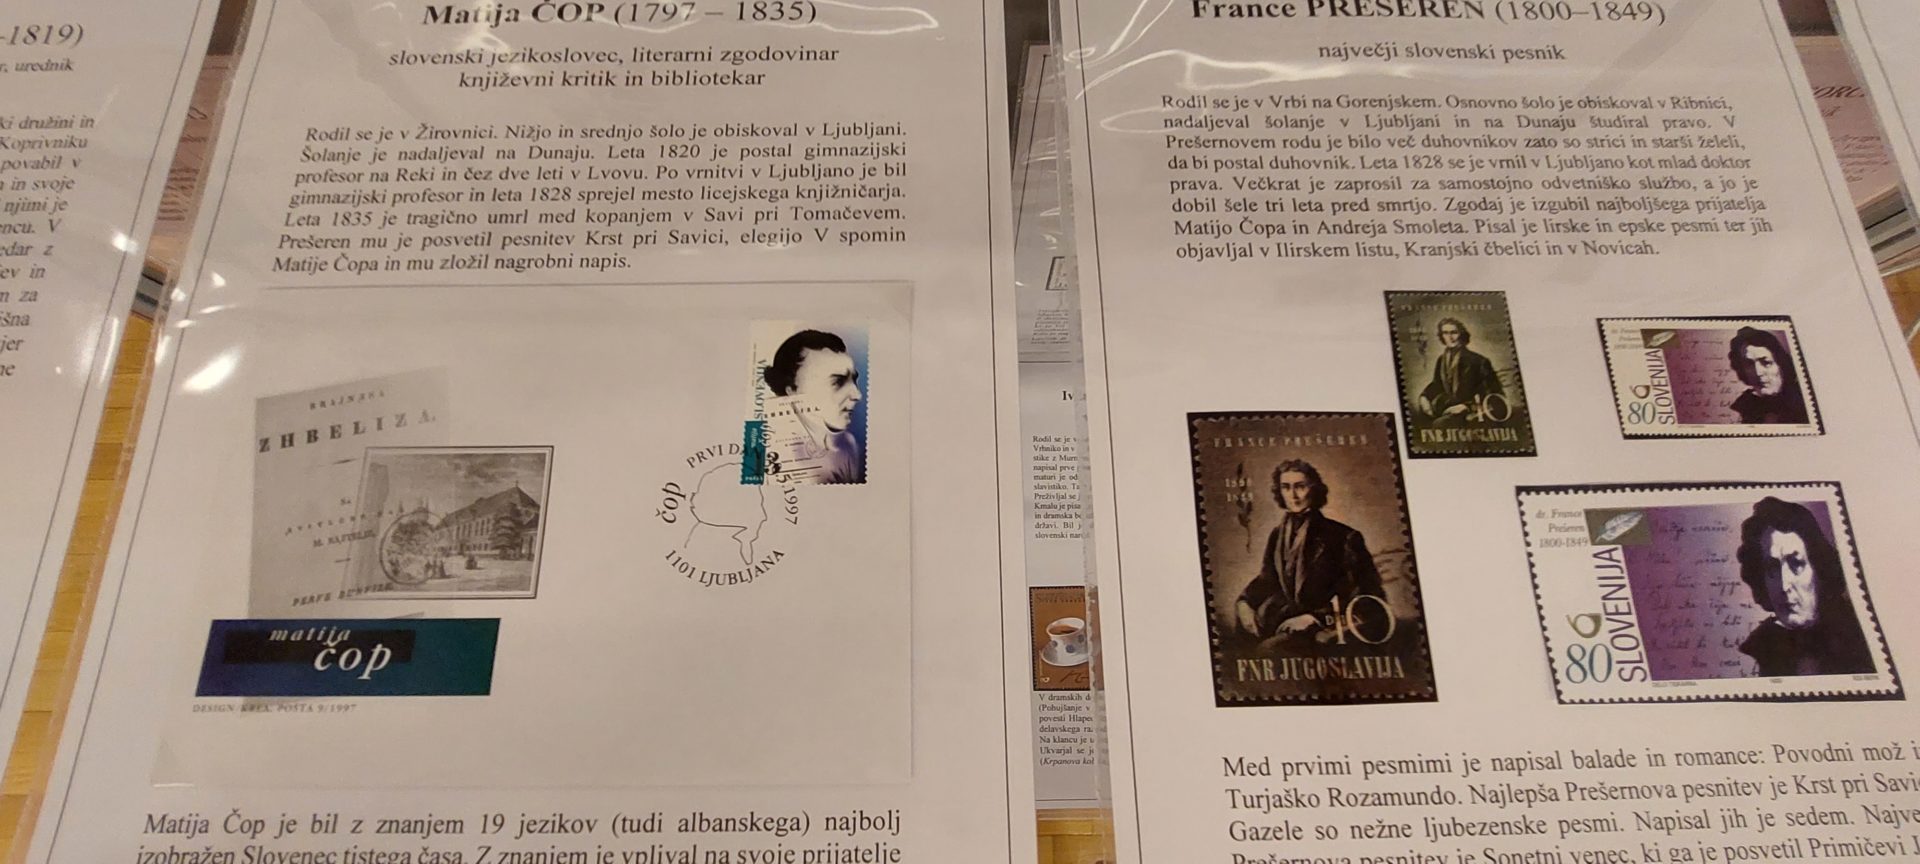 20220524 182640 - Literatura na znamkah - razstava znamk iz zbirke Marinke Cempre Turk